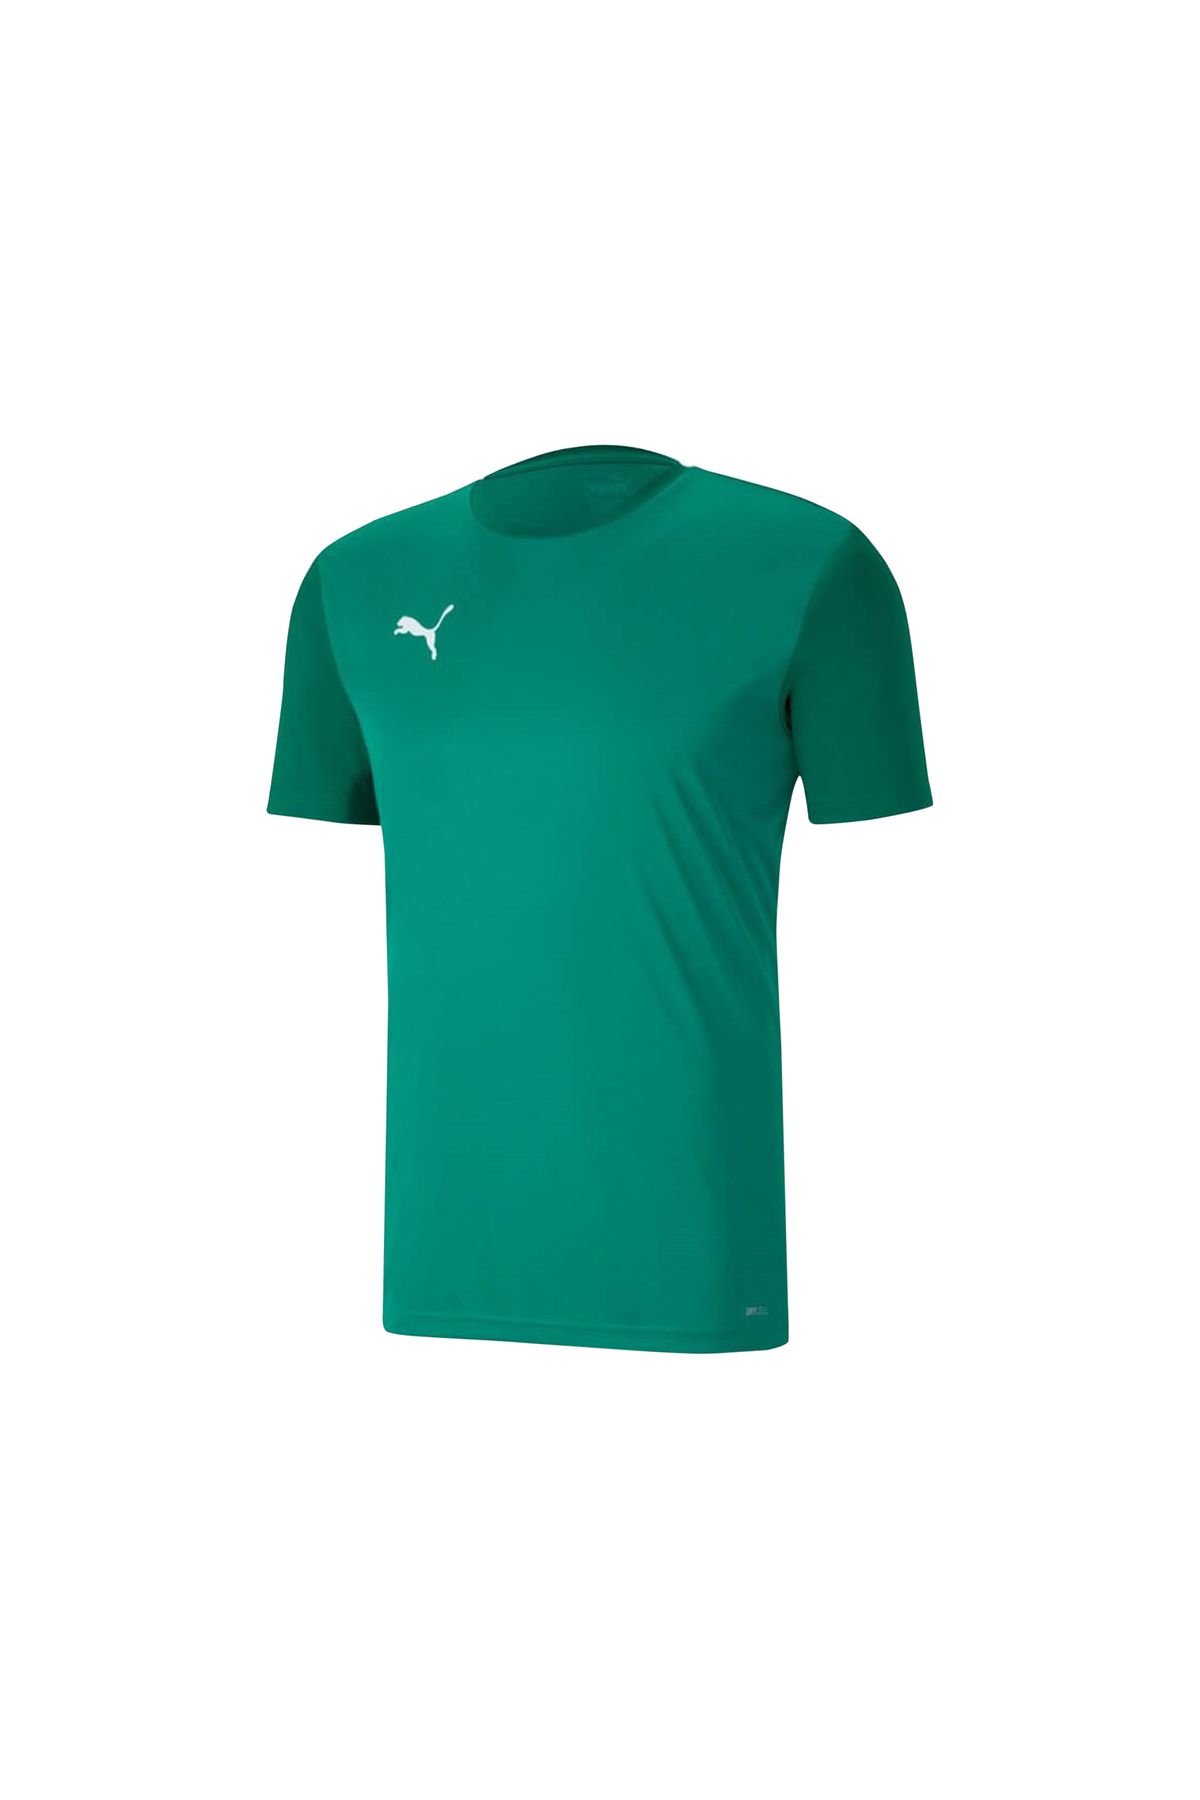 Puma Erkek Günlük Kullanıma ve Spora Uygun Antrenman T-shirt Rahat Düz Tişört